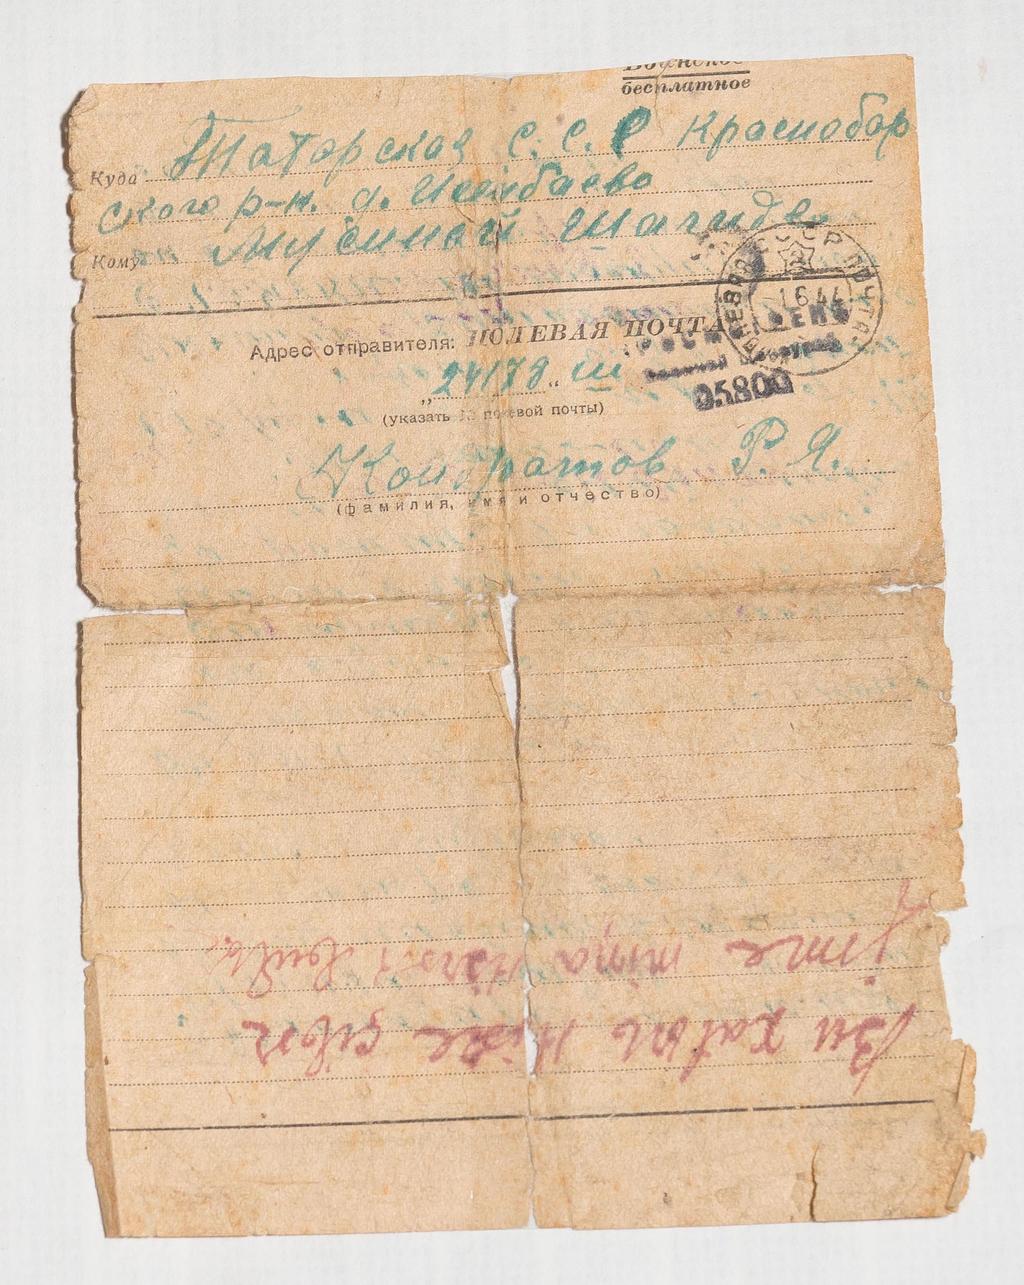 Письмо Кондратова Р.Я. Мусиной Ш. о смерти мужа Мусина Г. 1 июня 1944 года::Музей истории села Исенбаево  g2id23575